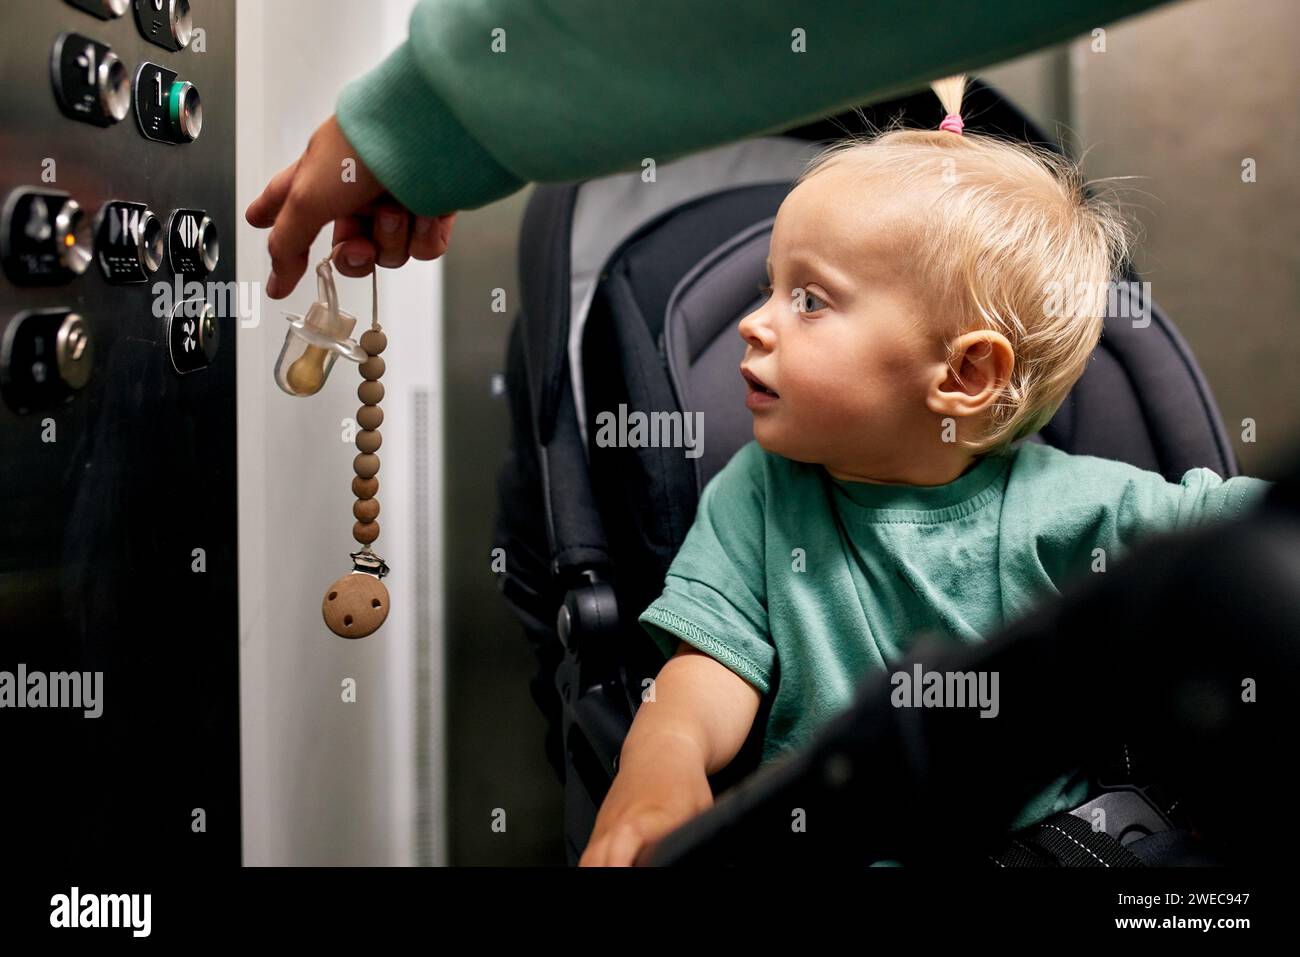 Ein kleines süßes Baby, das in einem Kinderwagen sitzt, drückt den Knopf am Boden im Fahrstuhl. Eine kleine Blondine in einer Kutsche fährt mit ihm den Aufzug hoch oder runter Stockfoto